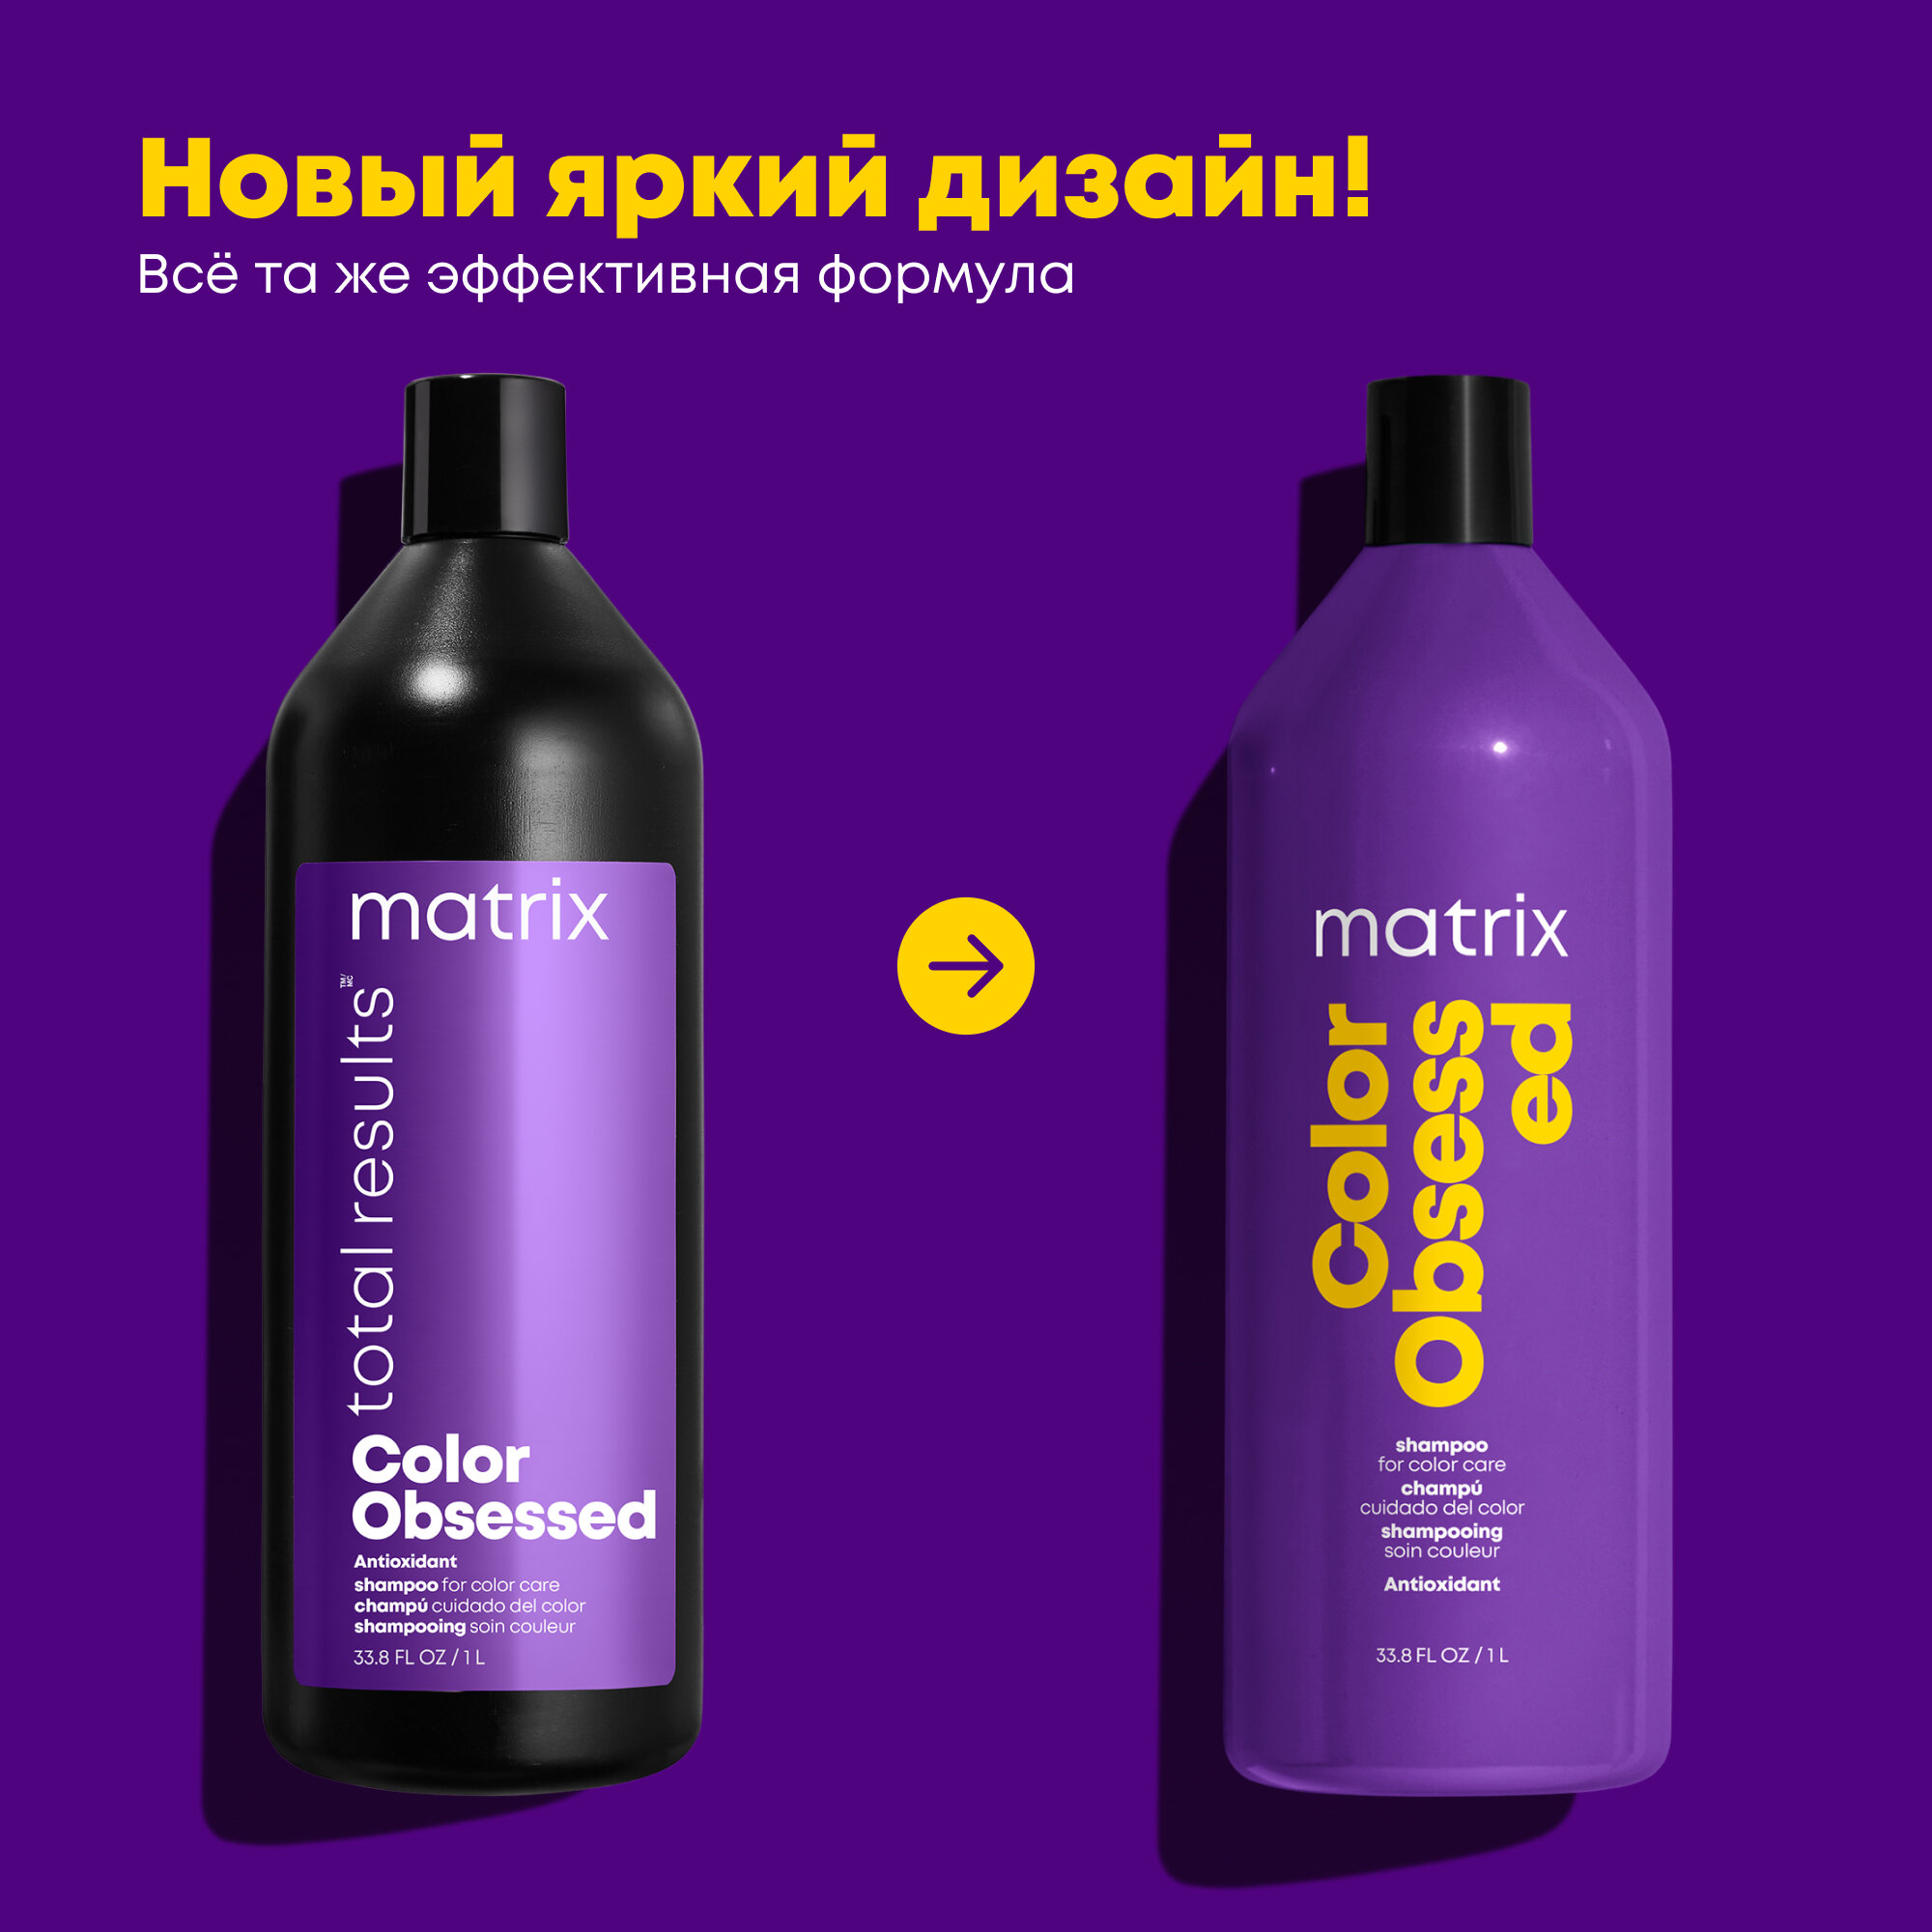 Matrix Шампунь для окрашенных волос, 300 мл (Matrix, ) - фото №2